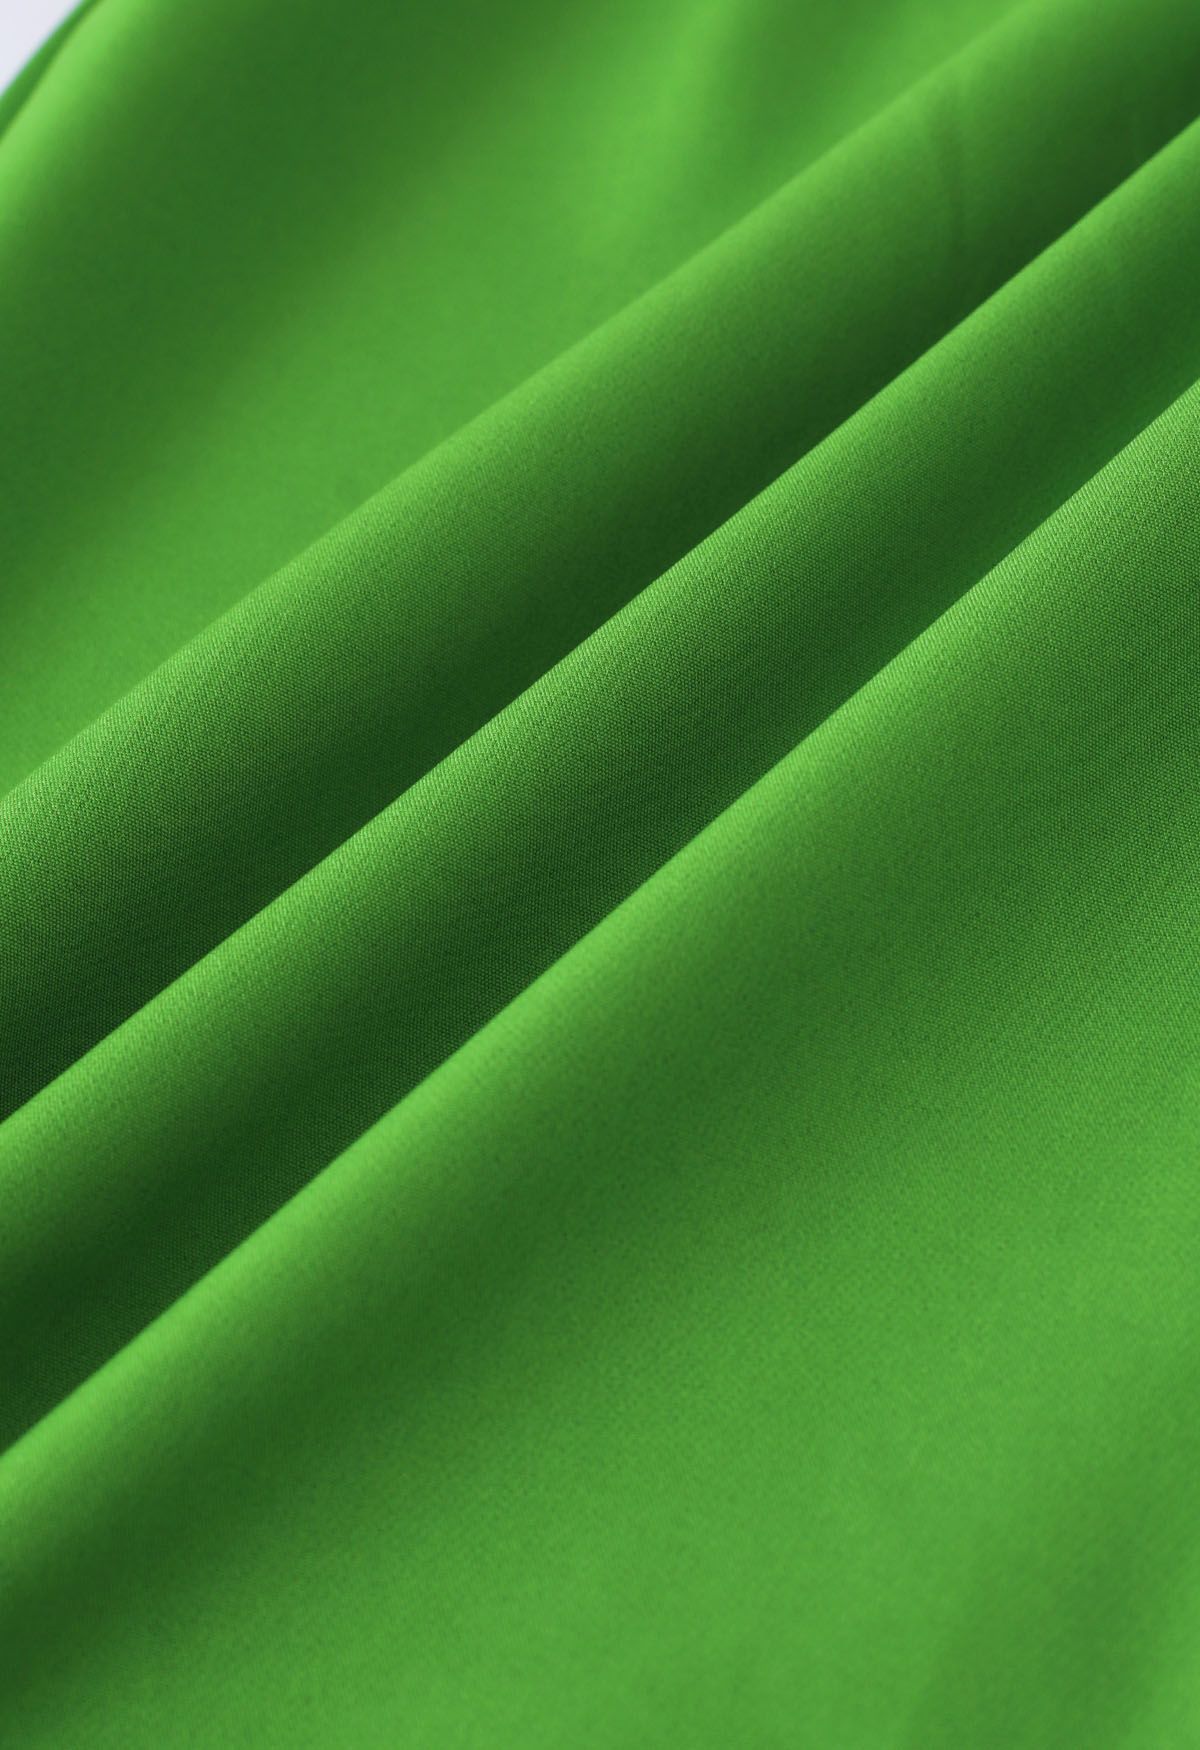 Pantalon droit à détails plissés vert gazon